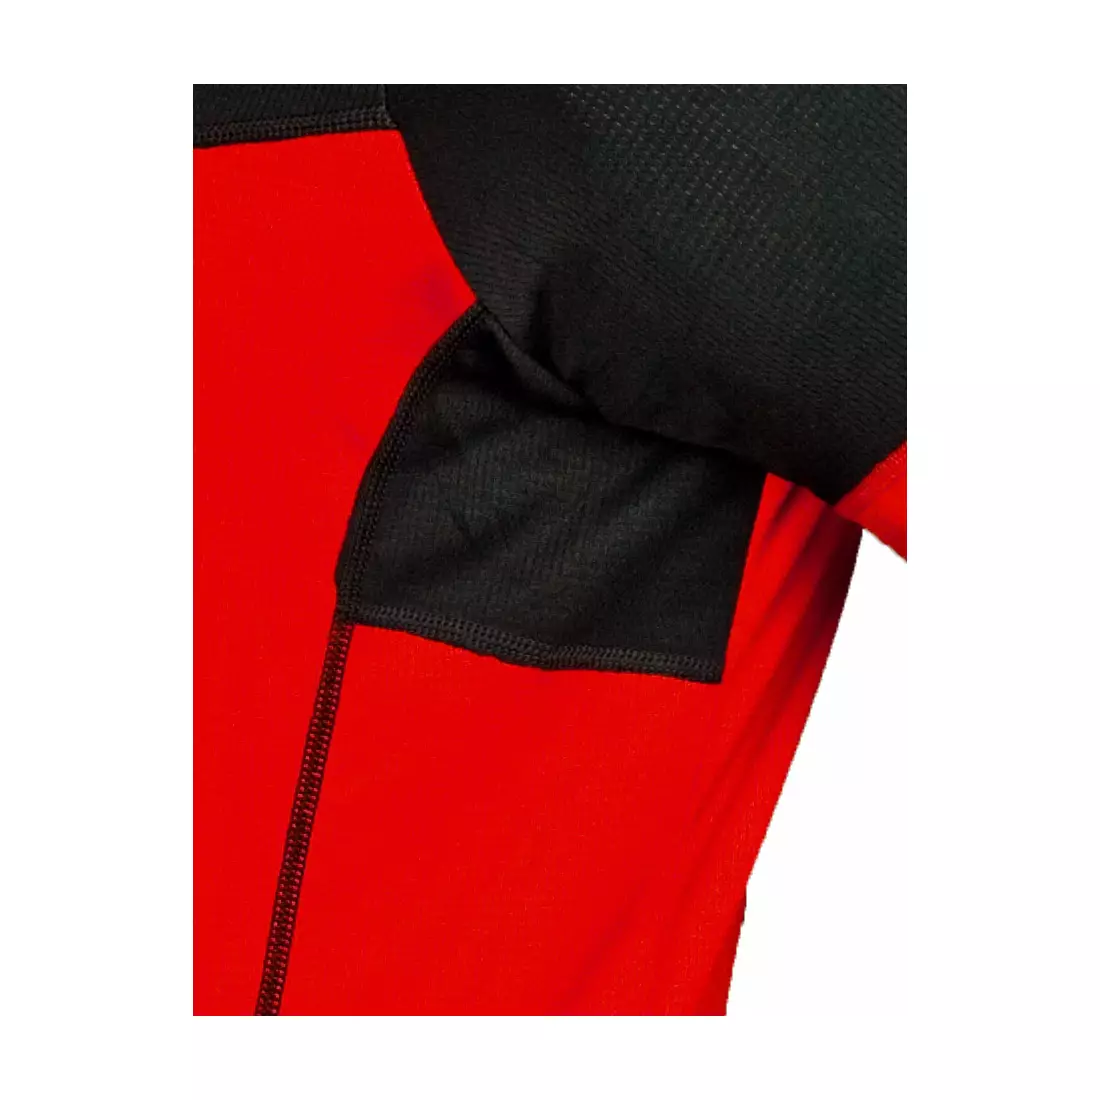 Pánský cyklistický dres DEKO FORZA, červeno-černý